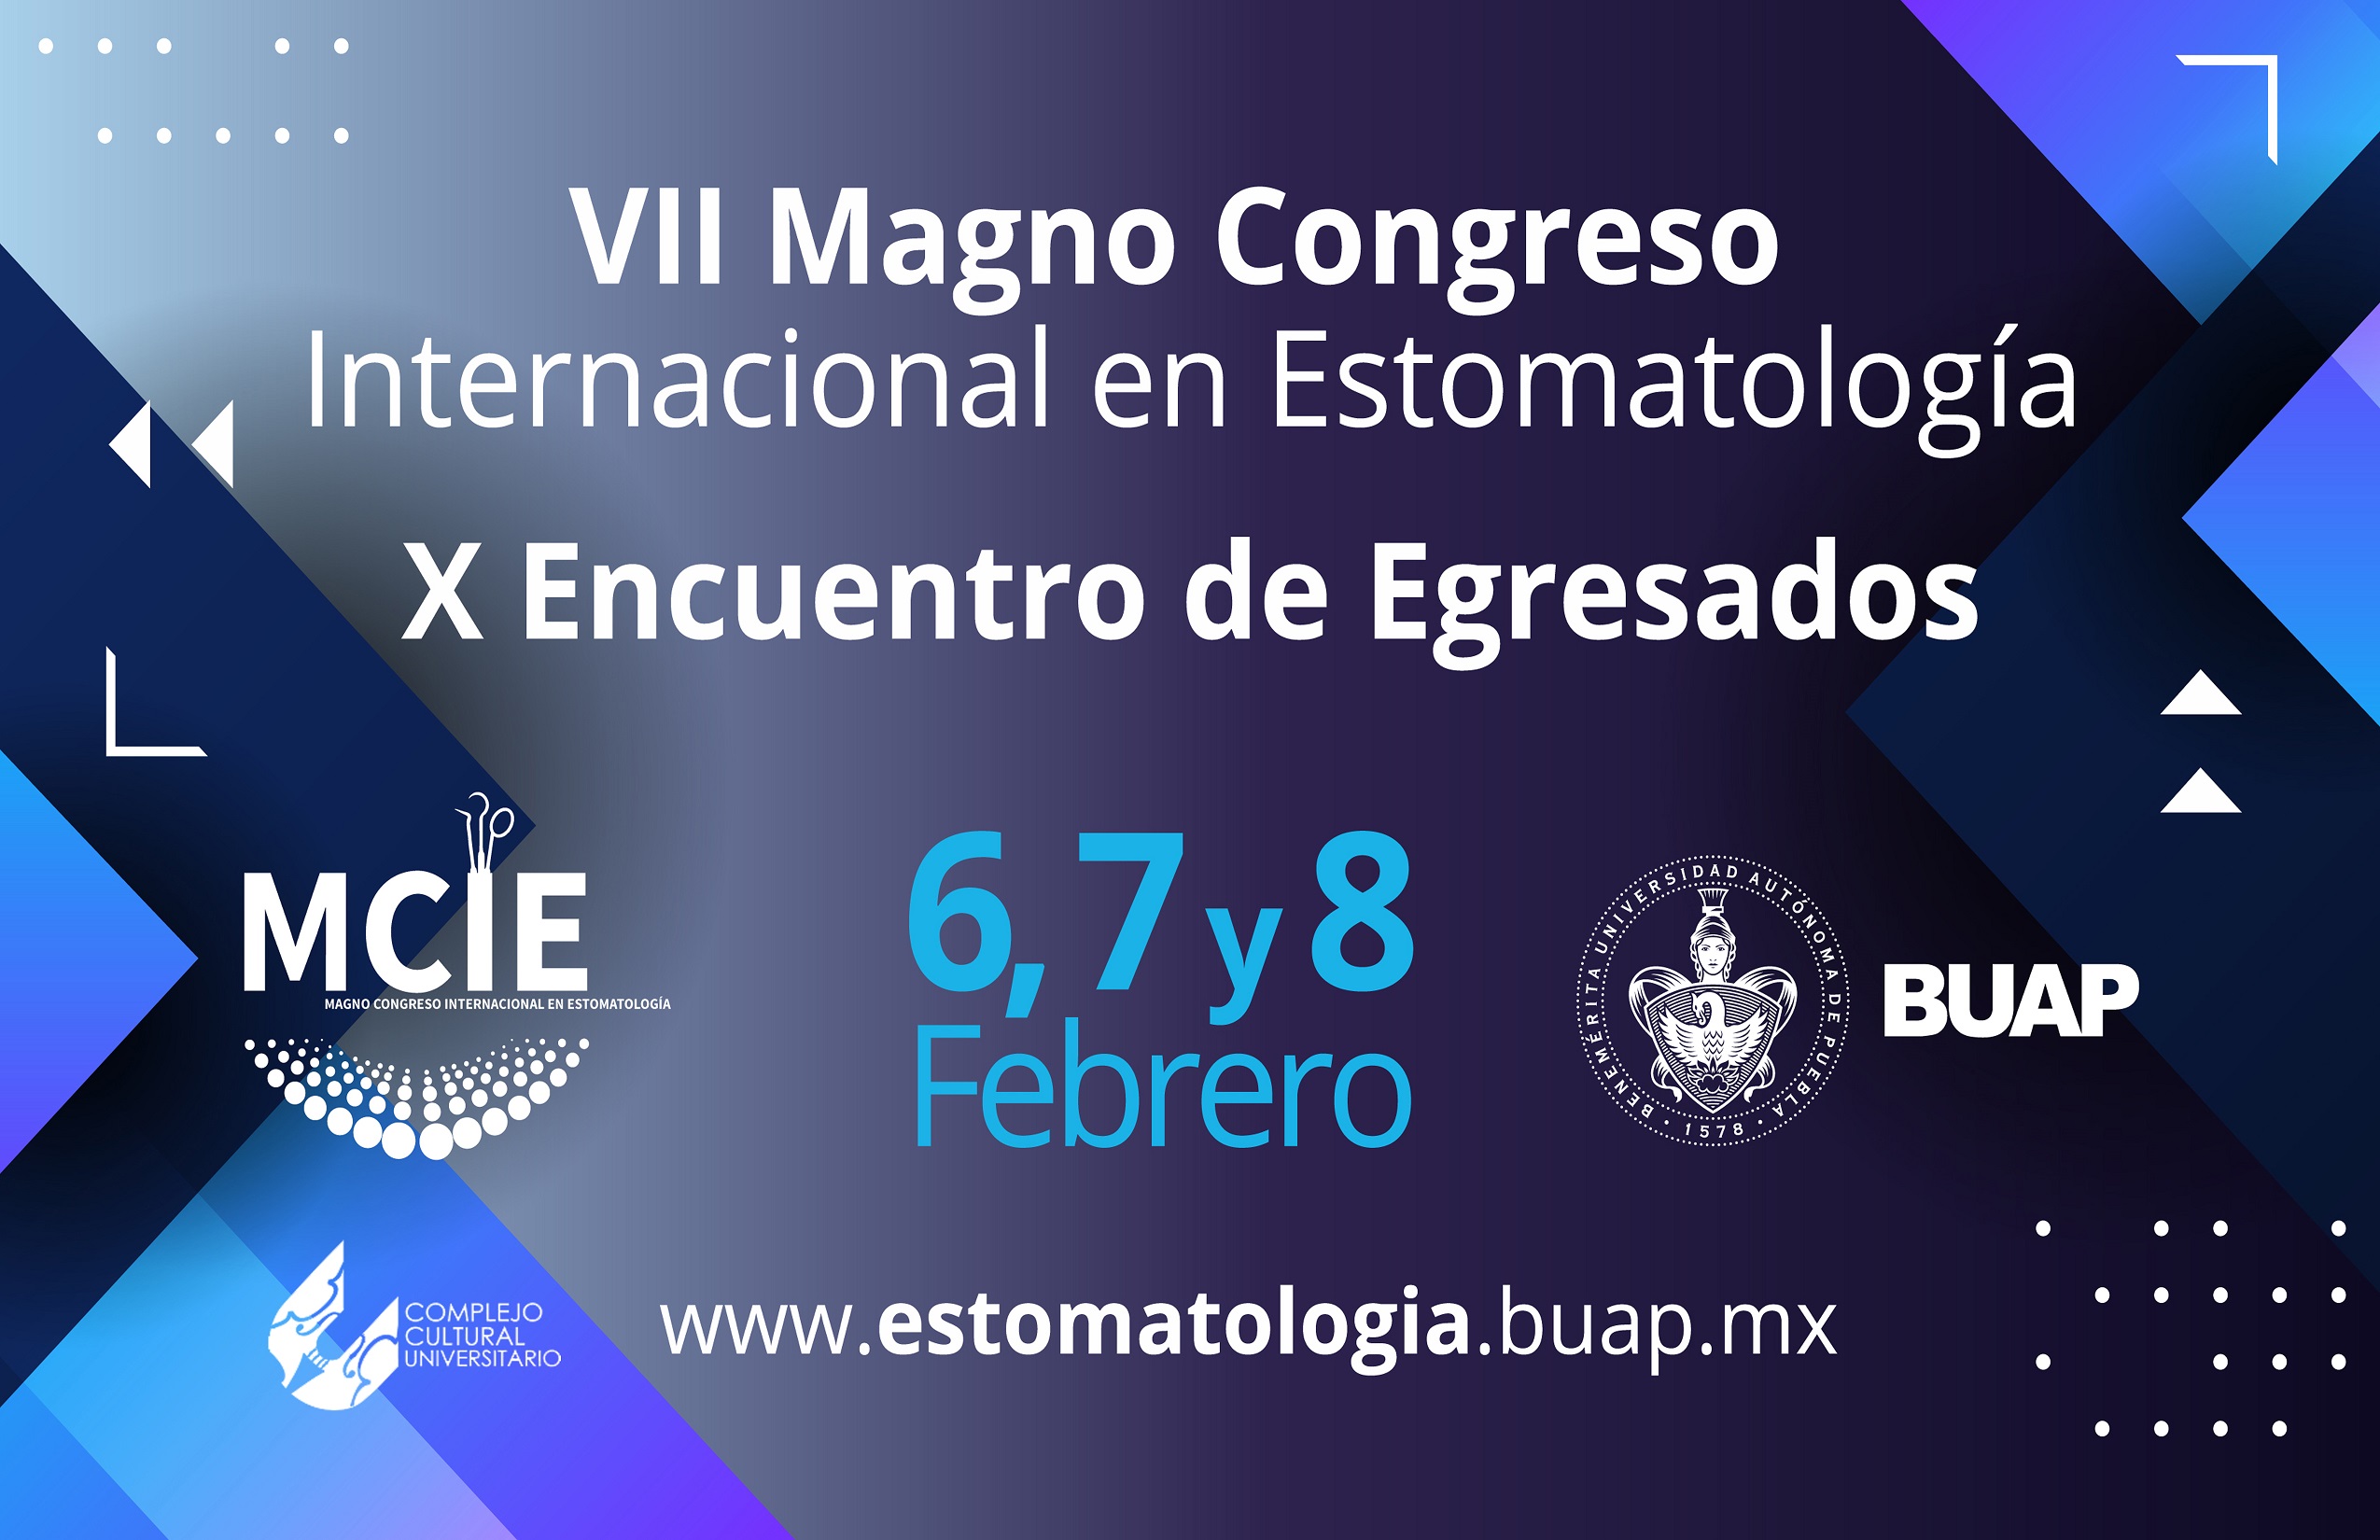 VII Magno Congreso y X Encuentro de Egresados en Estomatología 2020